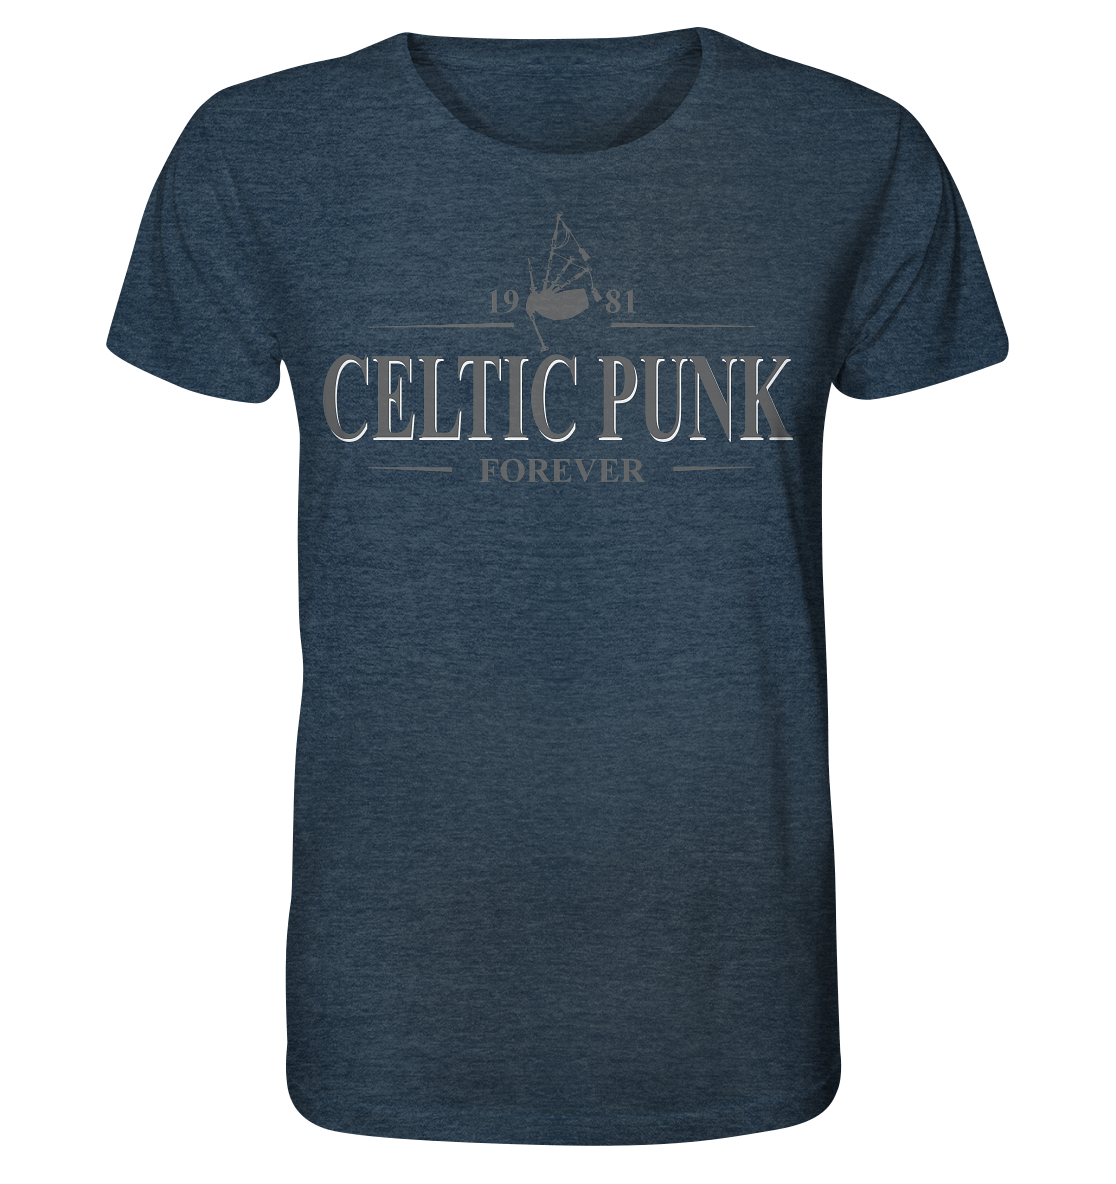 Celtic Punk "Forever" - Organic Shirt (meliert)